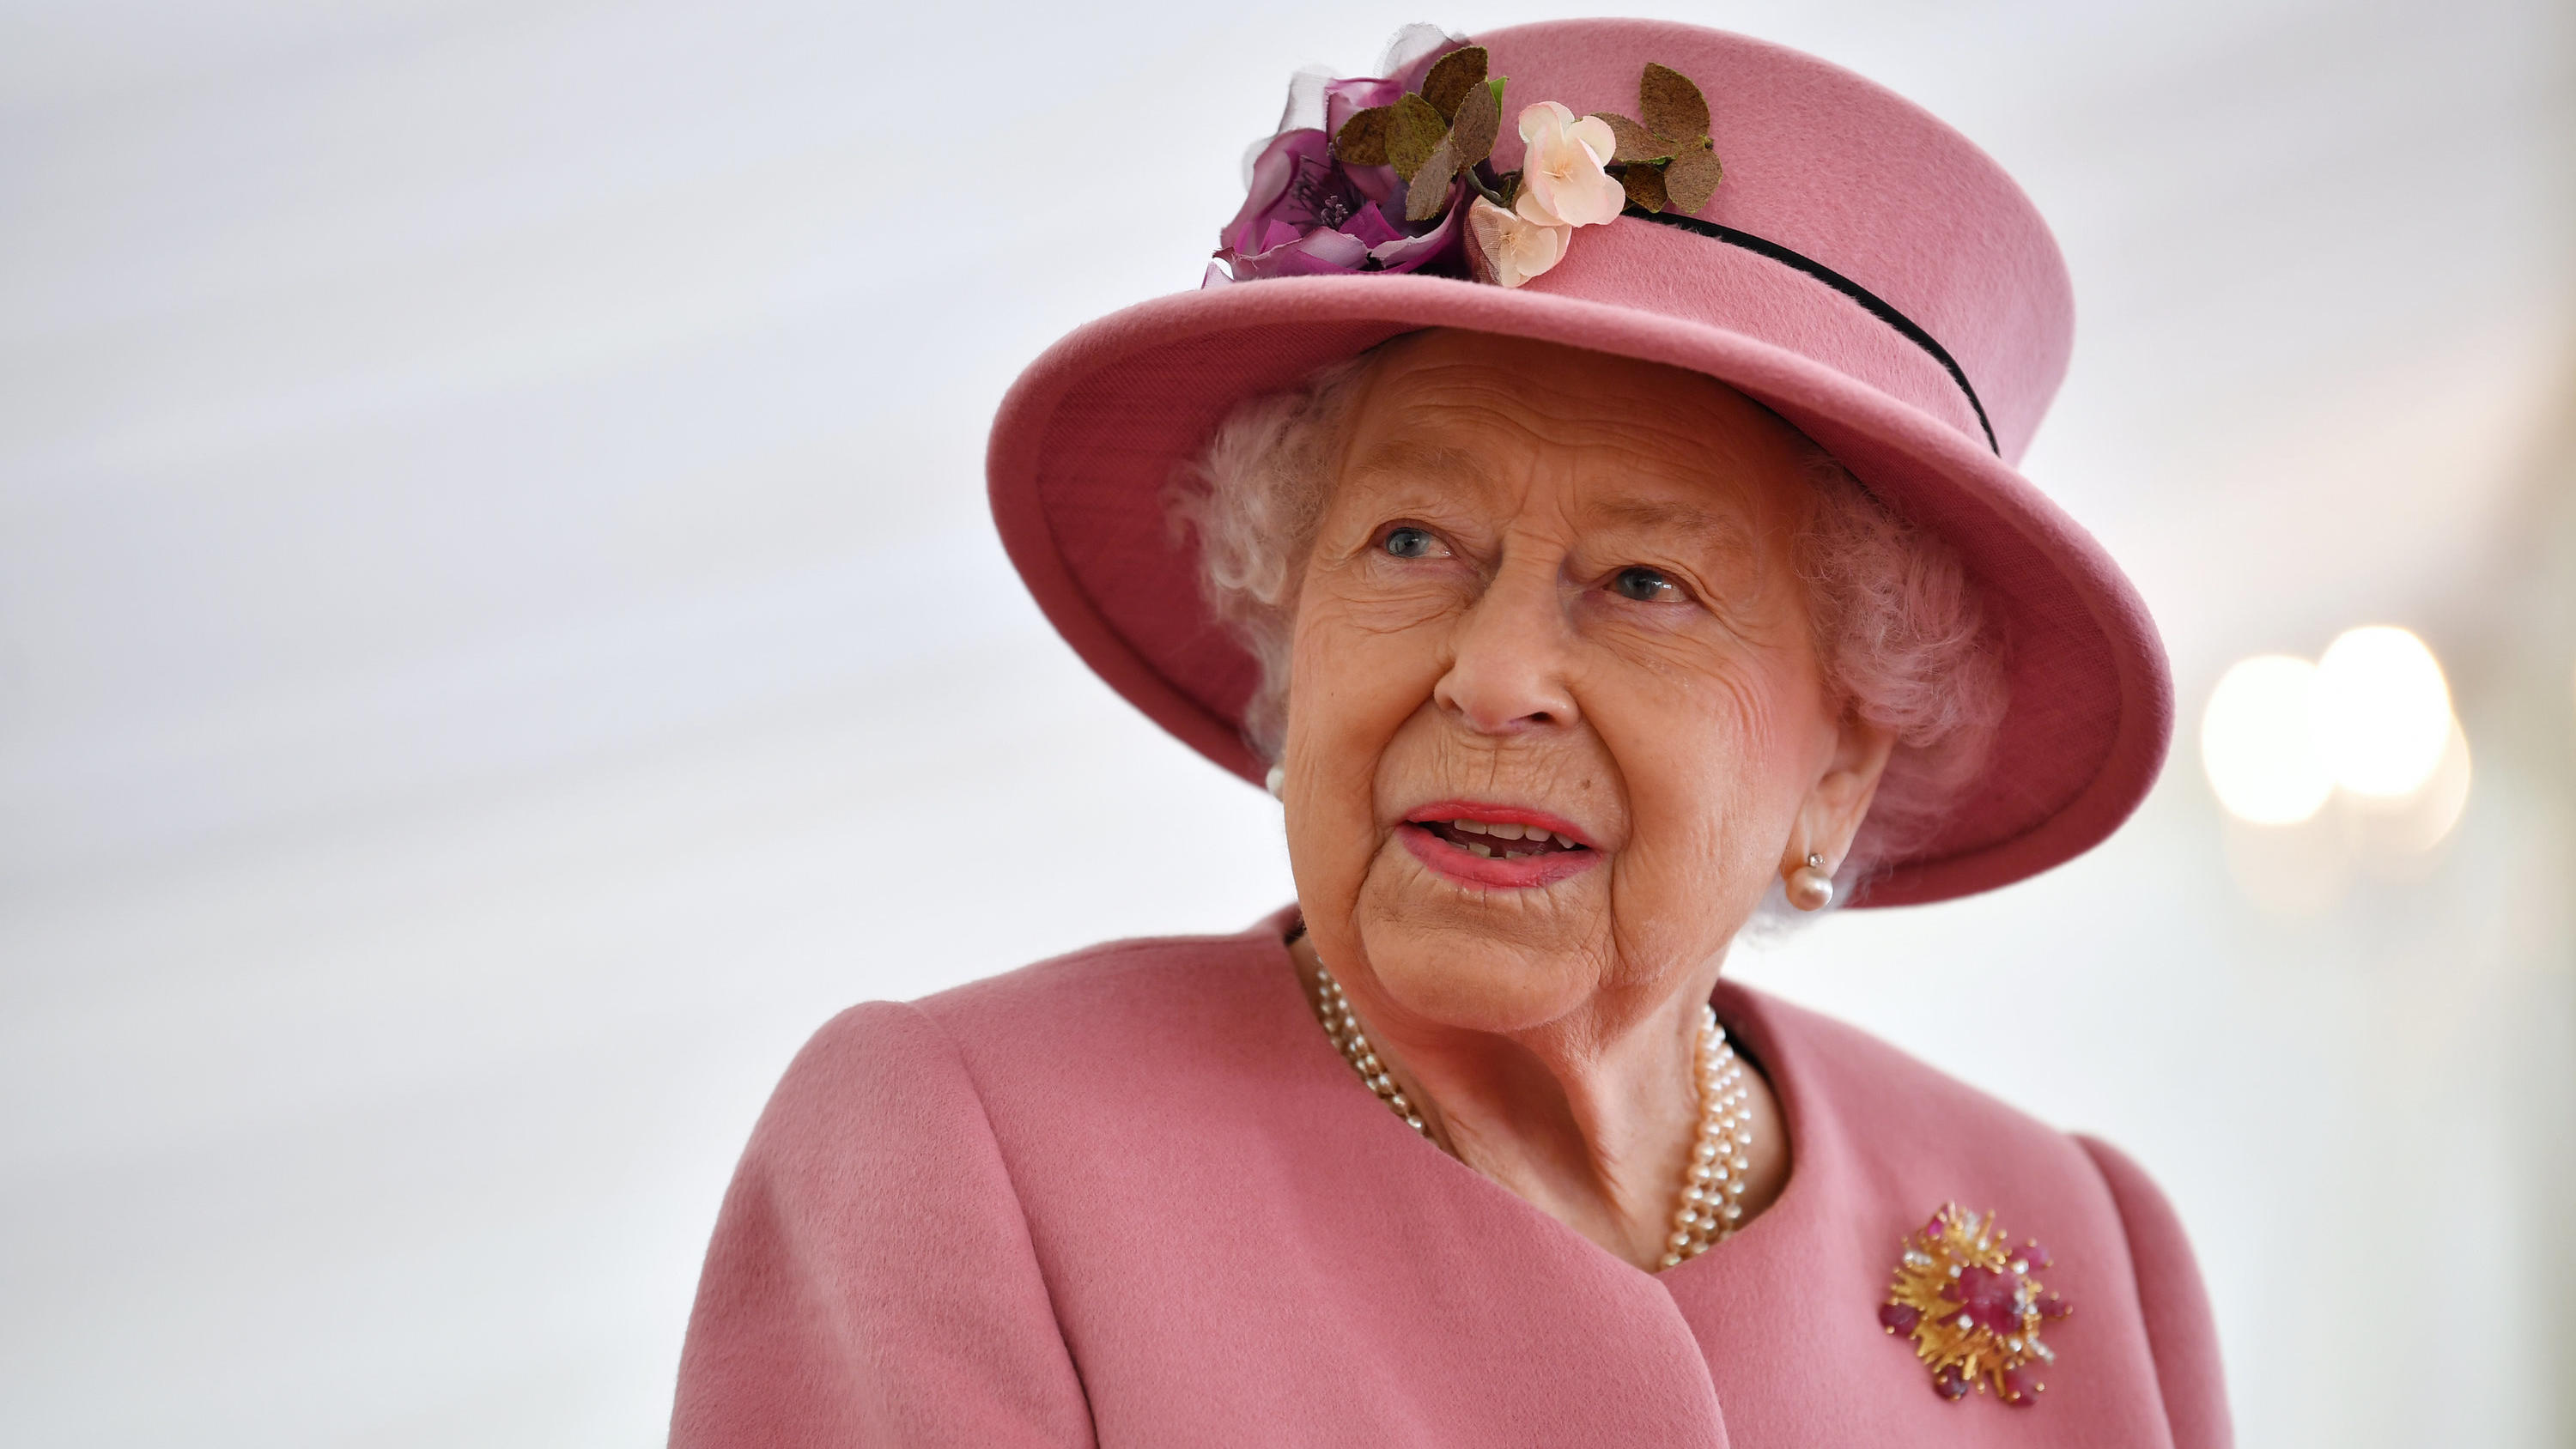 ARCHIV - 15.10.2020, Großbritannien, Porton Down: Königin Elisabeth II. von Großbritannien spricht während ihres Besuchs eines Rüstungstechnologiezentrum in der Nähe der südenglischen Stadt Salisbury. Kurz vor ihrer großen Jubiläumsparty brauchte Que